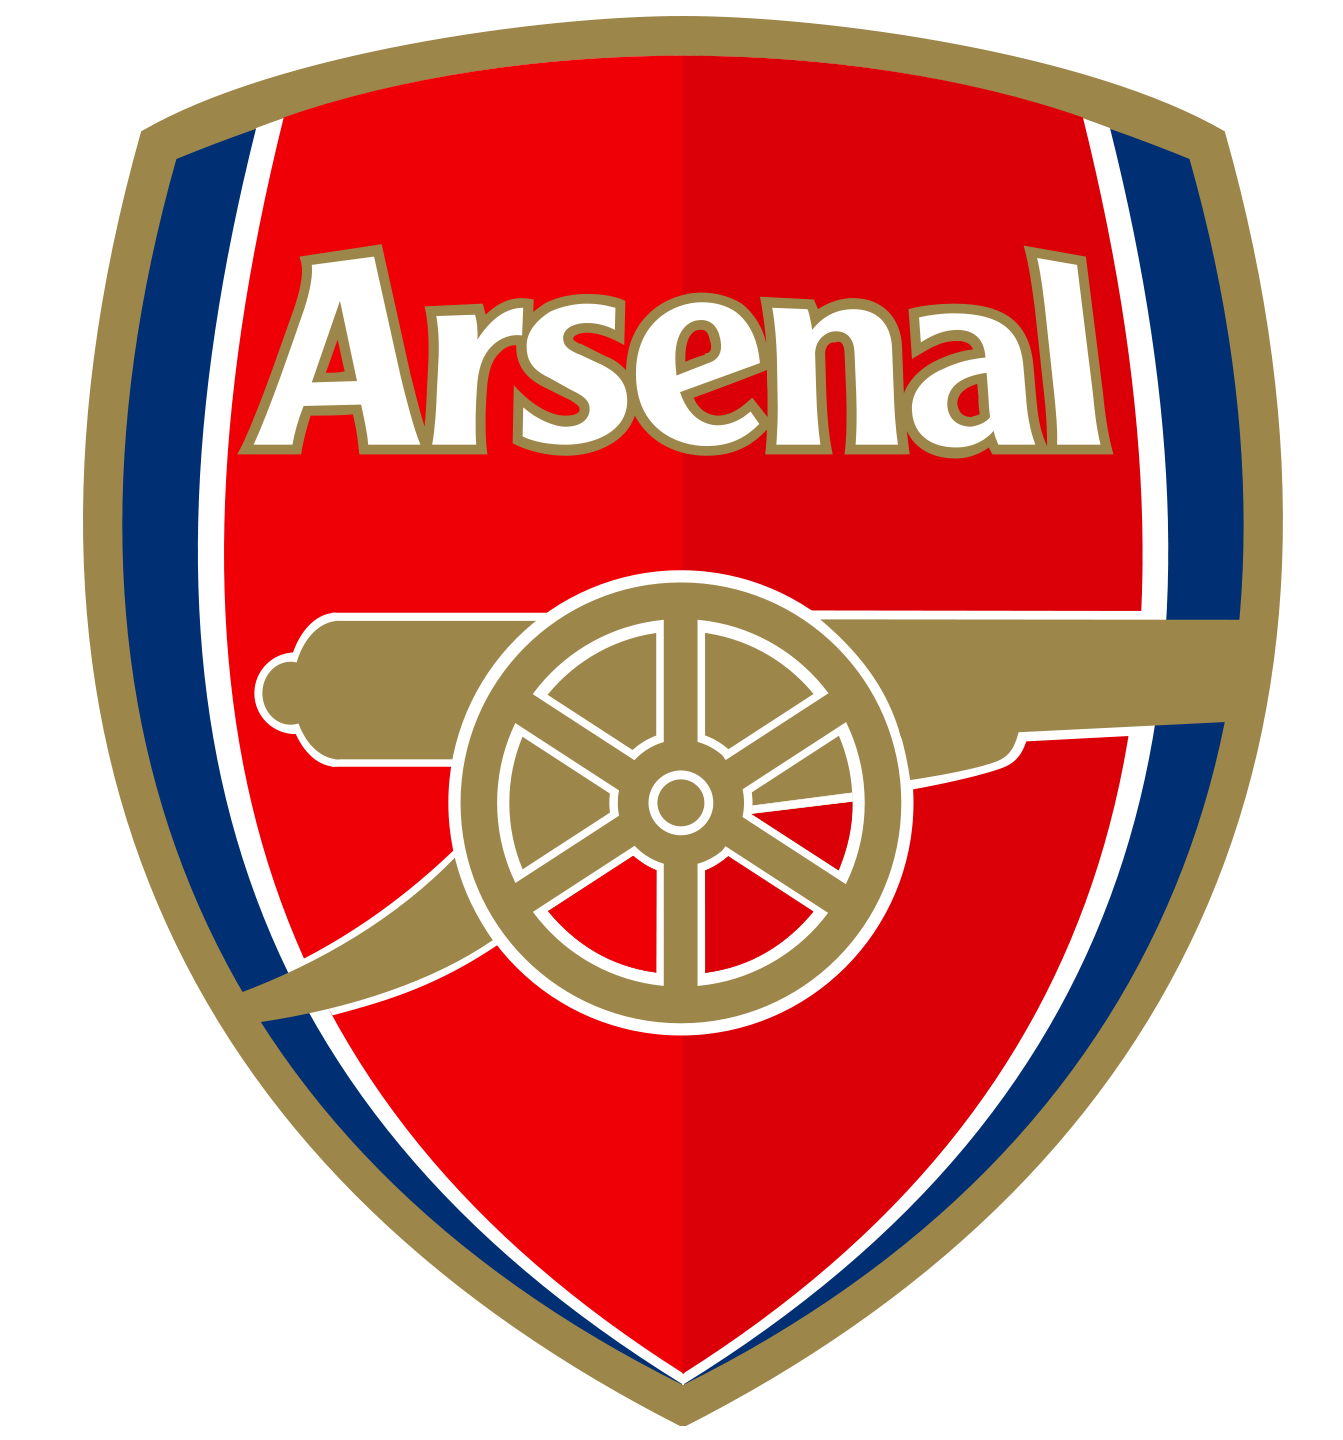 Tổng hợp logo Arsenal đẹp nhất - Bạn đang tìm kiếm bộ sưu tập logo Arsenal đẹp nhất? Đến ngay với chúng tôi để khám phá những hình ảnh đầy tinh tế và sang trọng về biểu tượng của câu lạc bộ bóng đá nổi tiếng này.